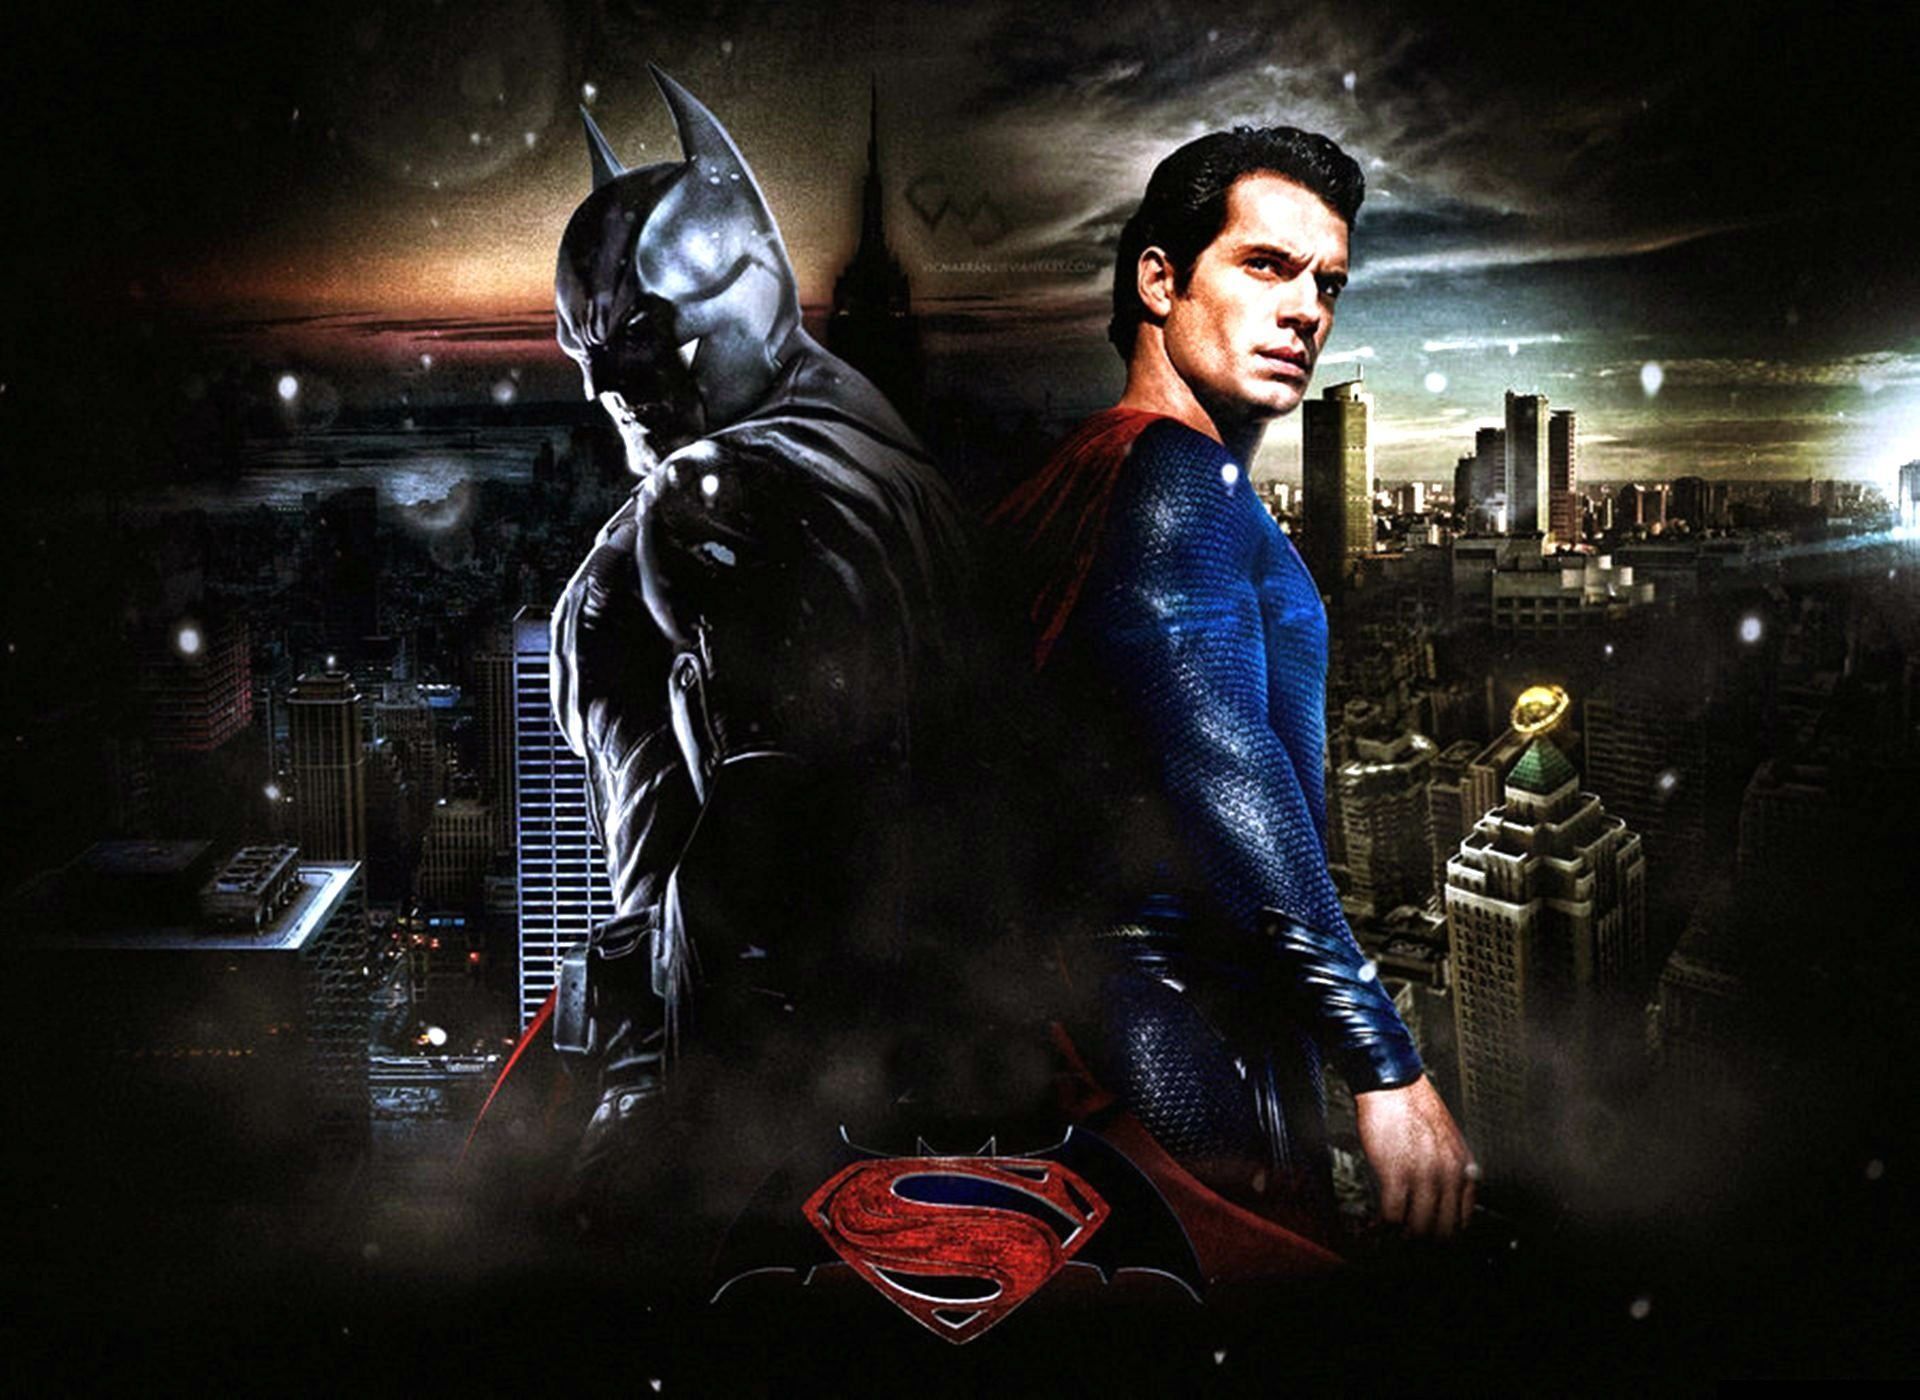 Superman Vs Batman Wallpaper For Iphone #0bm ~ Wallpaper Petakilan.com